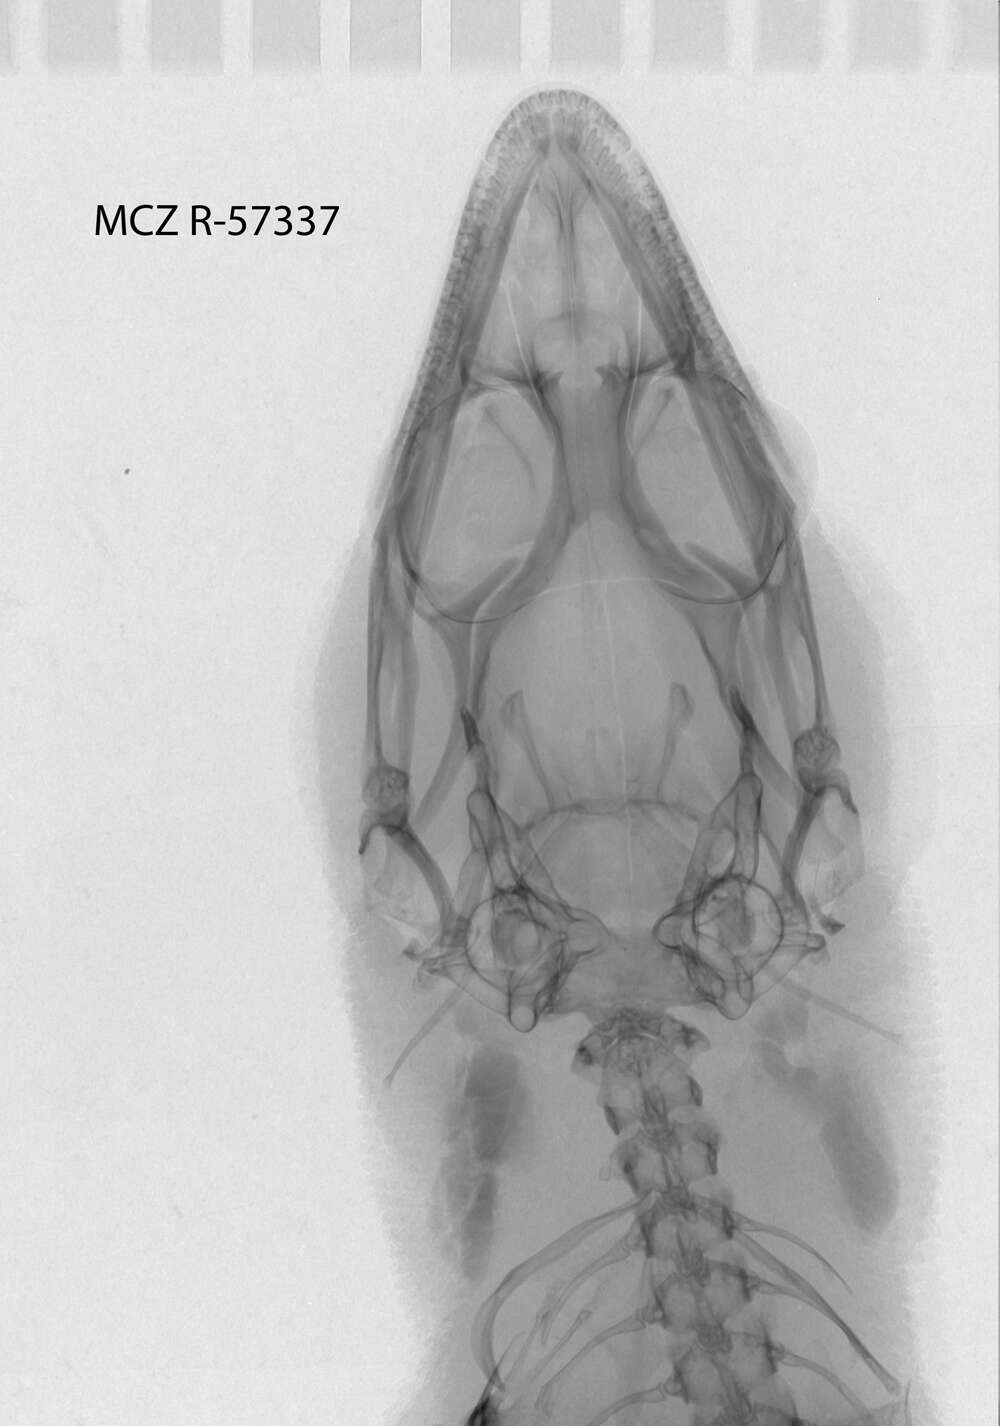 Image of Sphaerodactylus elegans elegans Macleay 1834